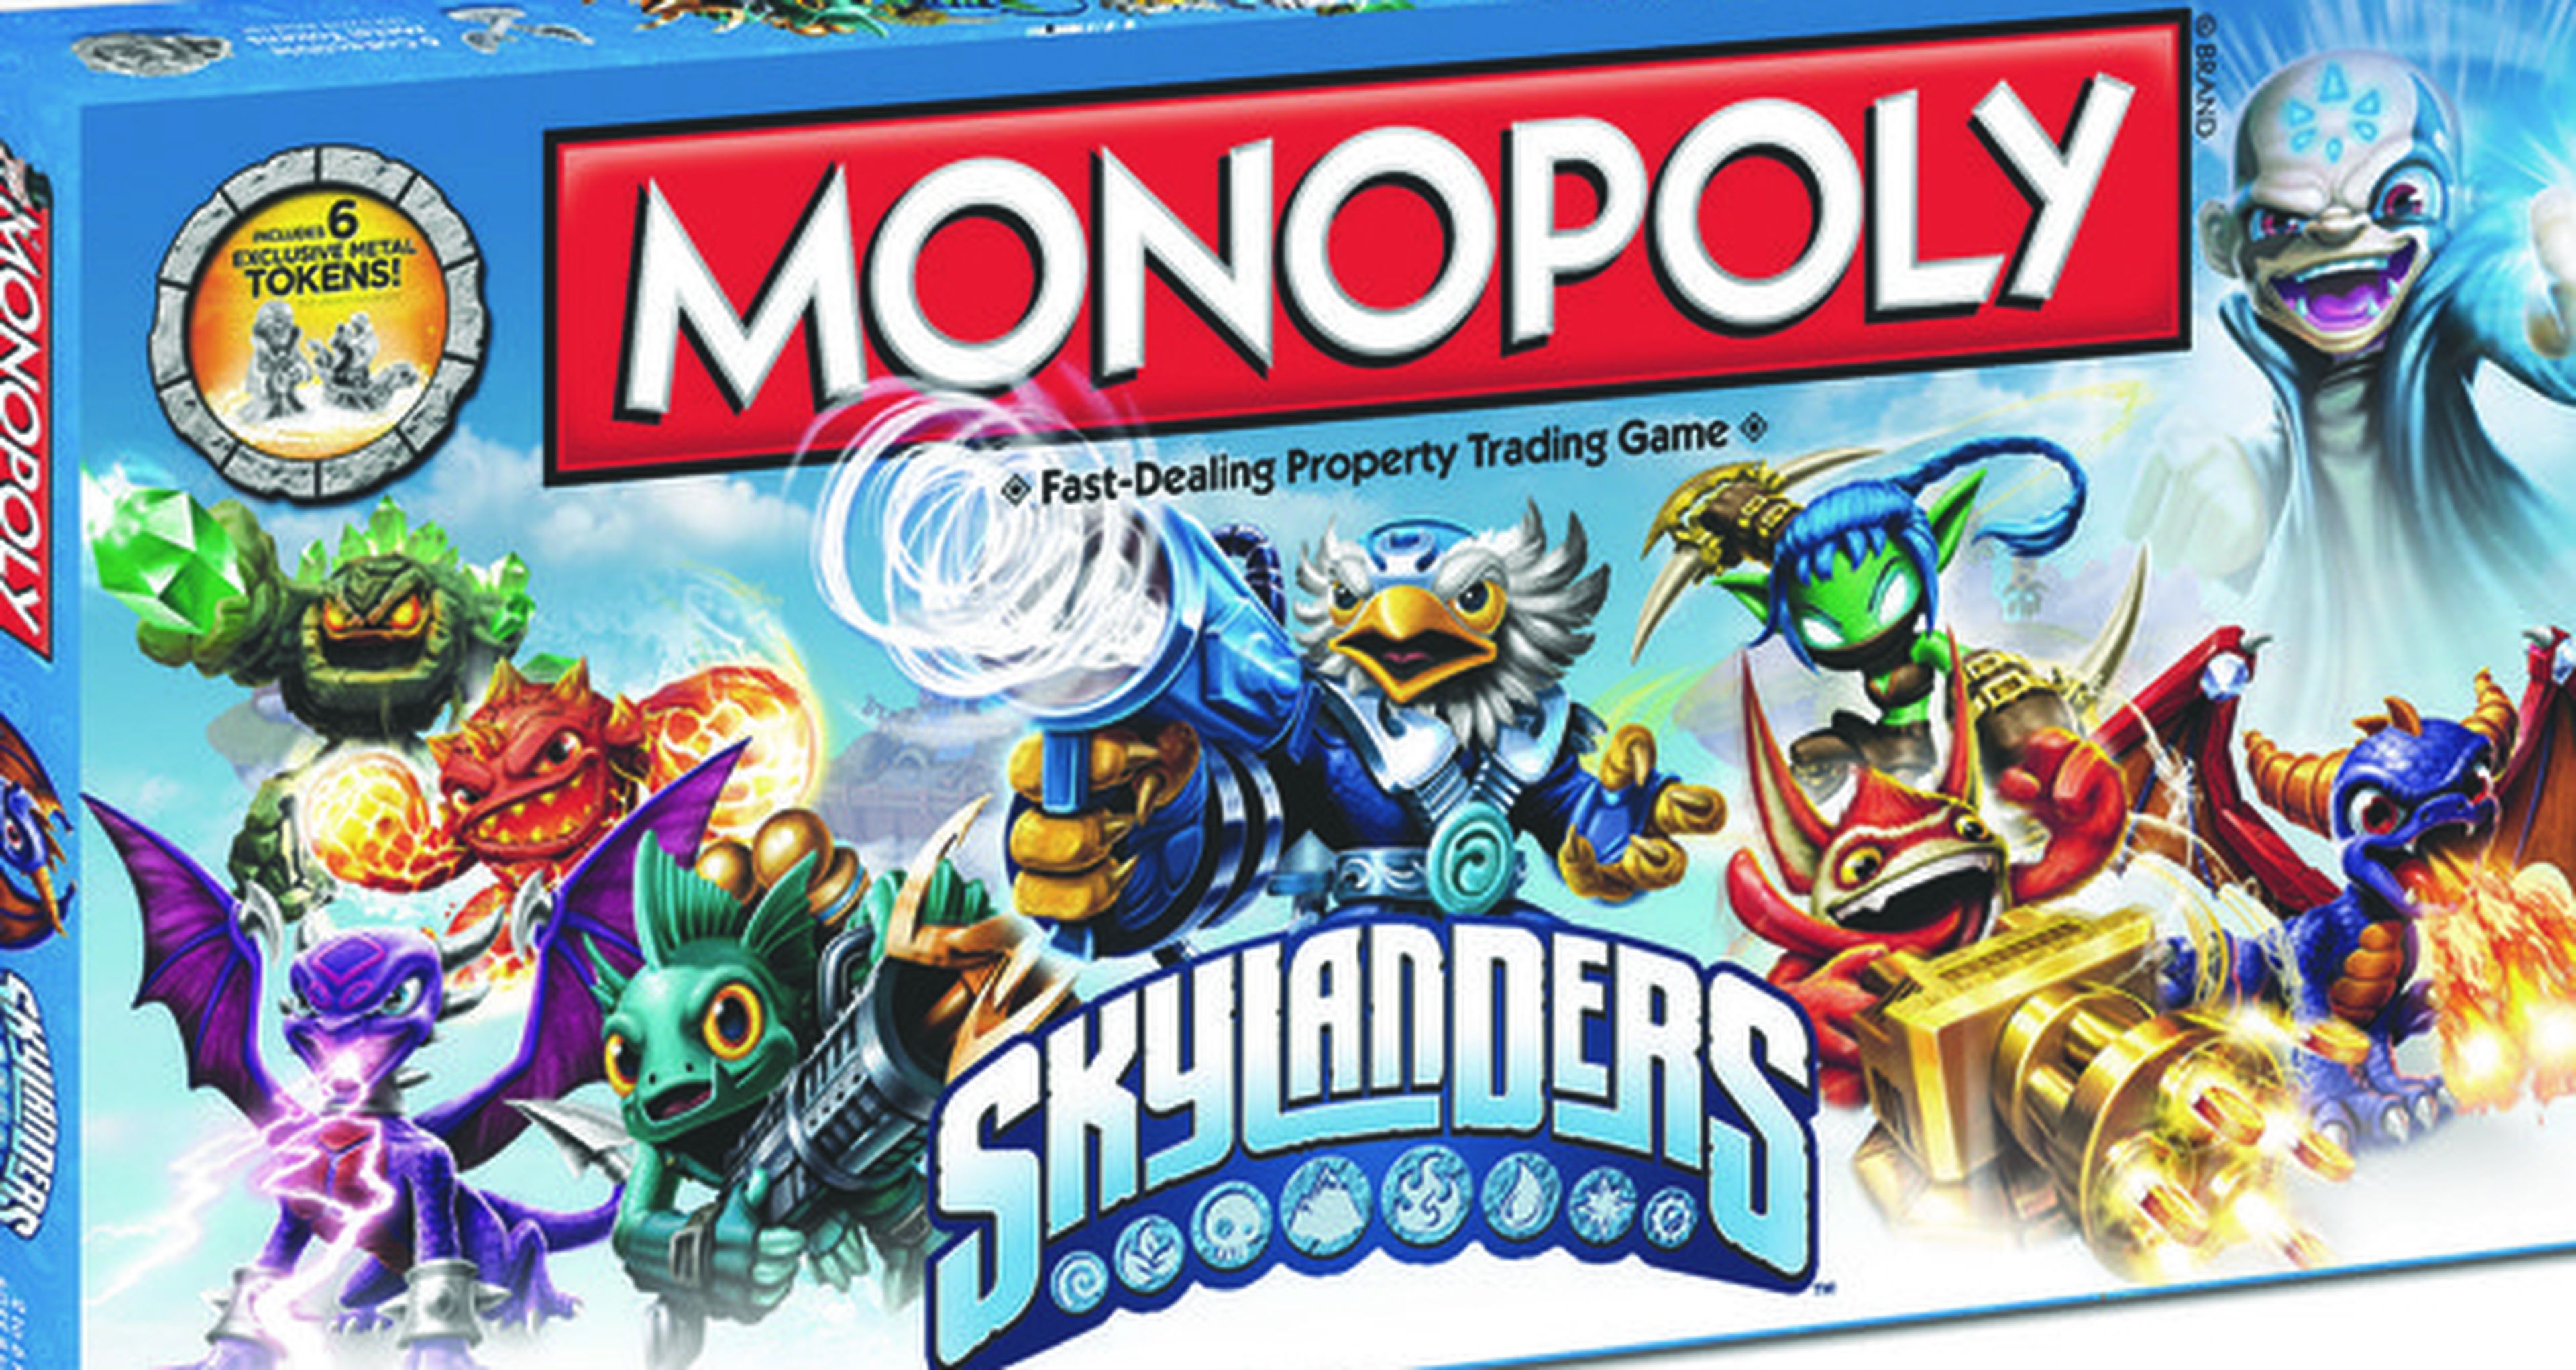 Monopoly oficial de Skylanders